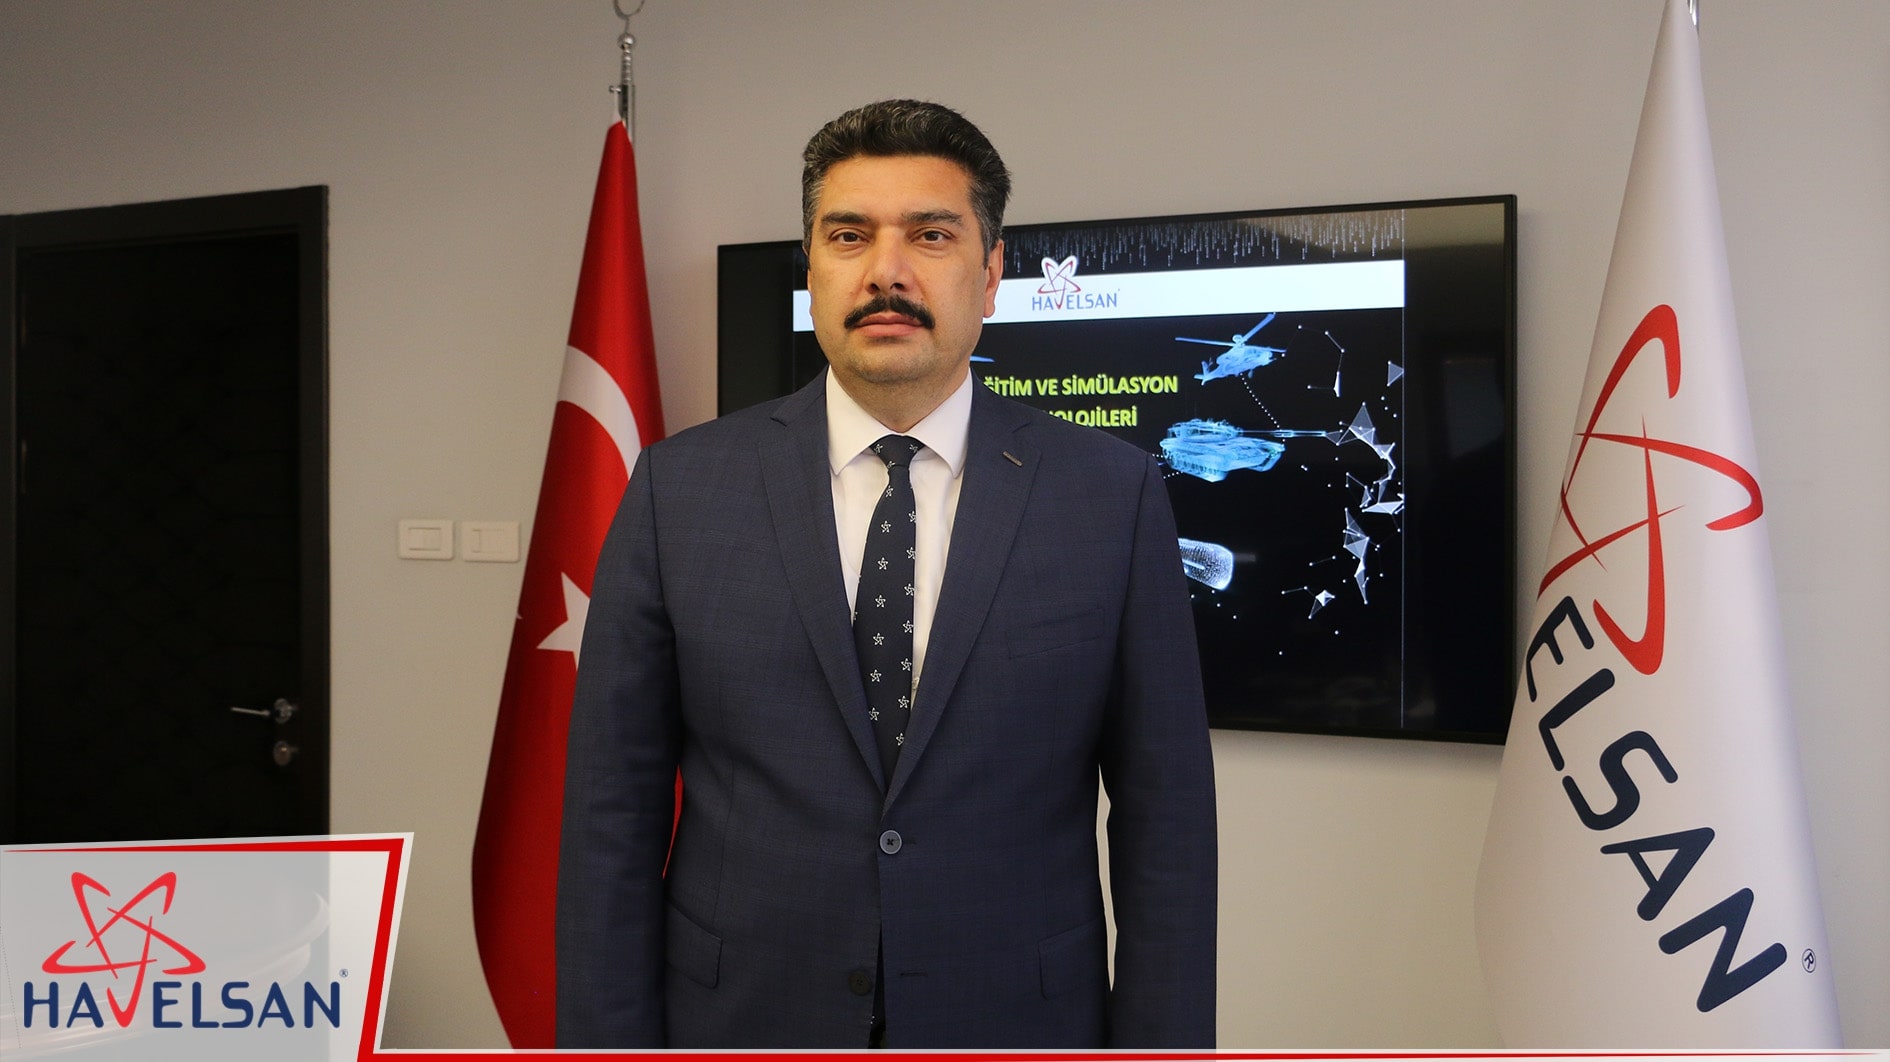 Türkiye kendi simülatörünü üreten beş ülkeden biri (röportaj)